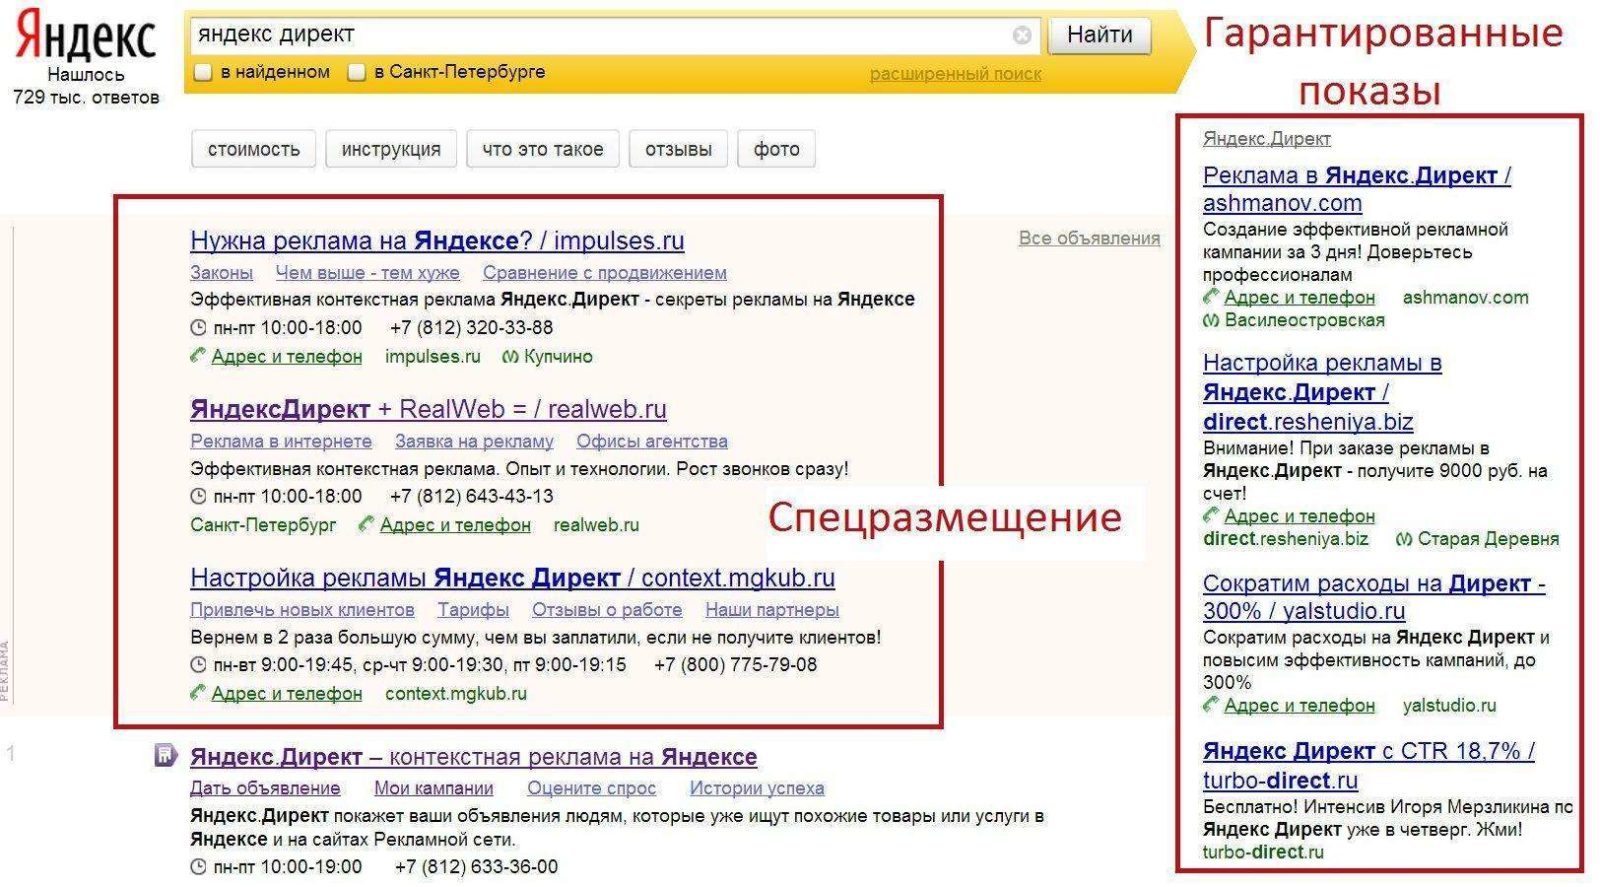 Настройка рекламы в Яндекс.Директе: эффективное привлечение клиентов и повышение конверсии